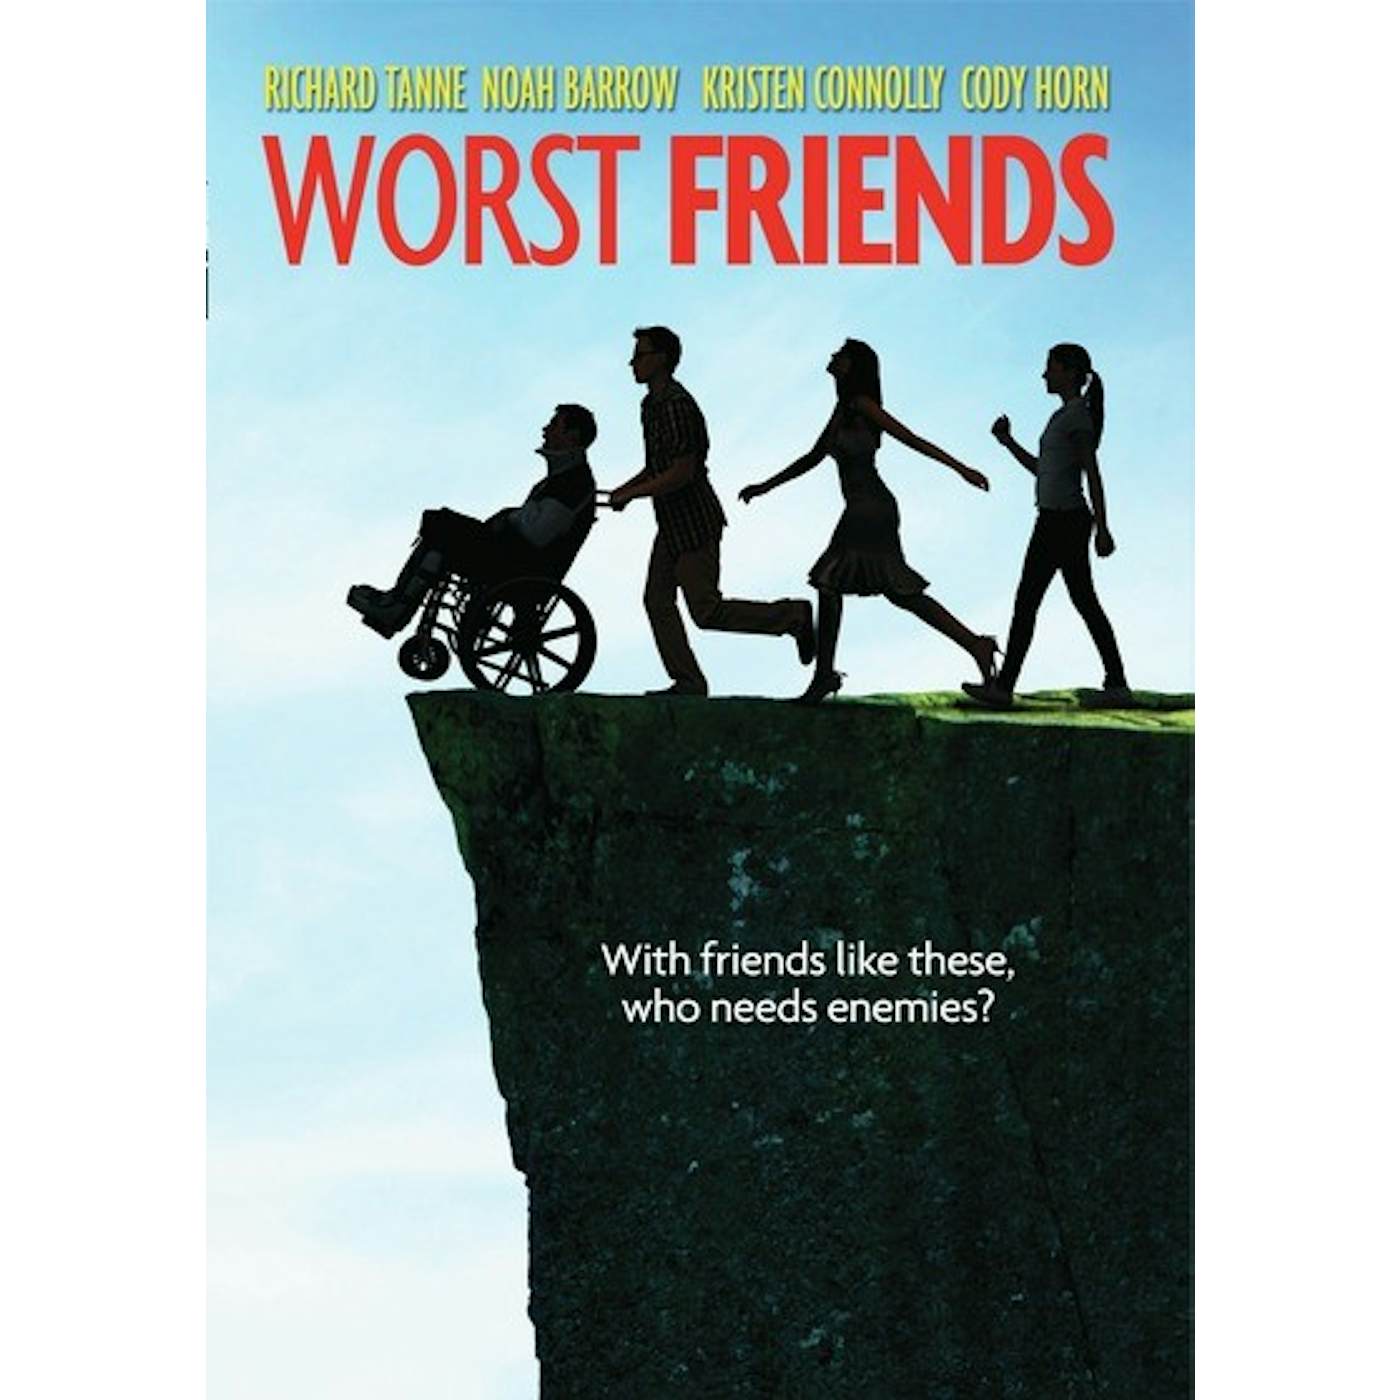 WORST FRIENDS DVD